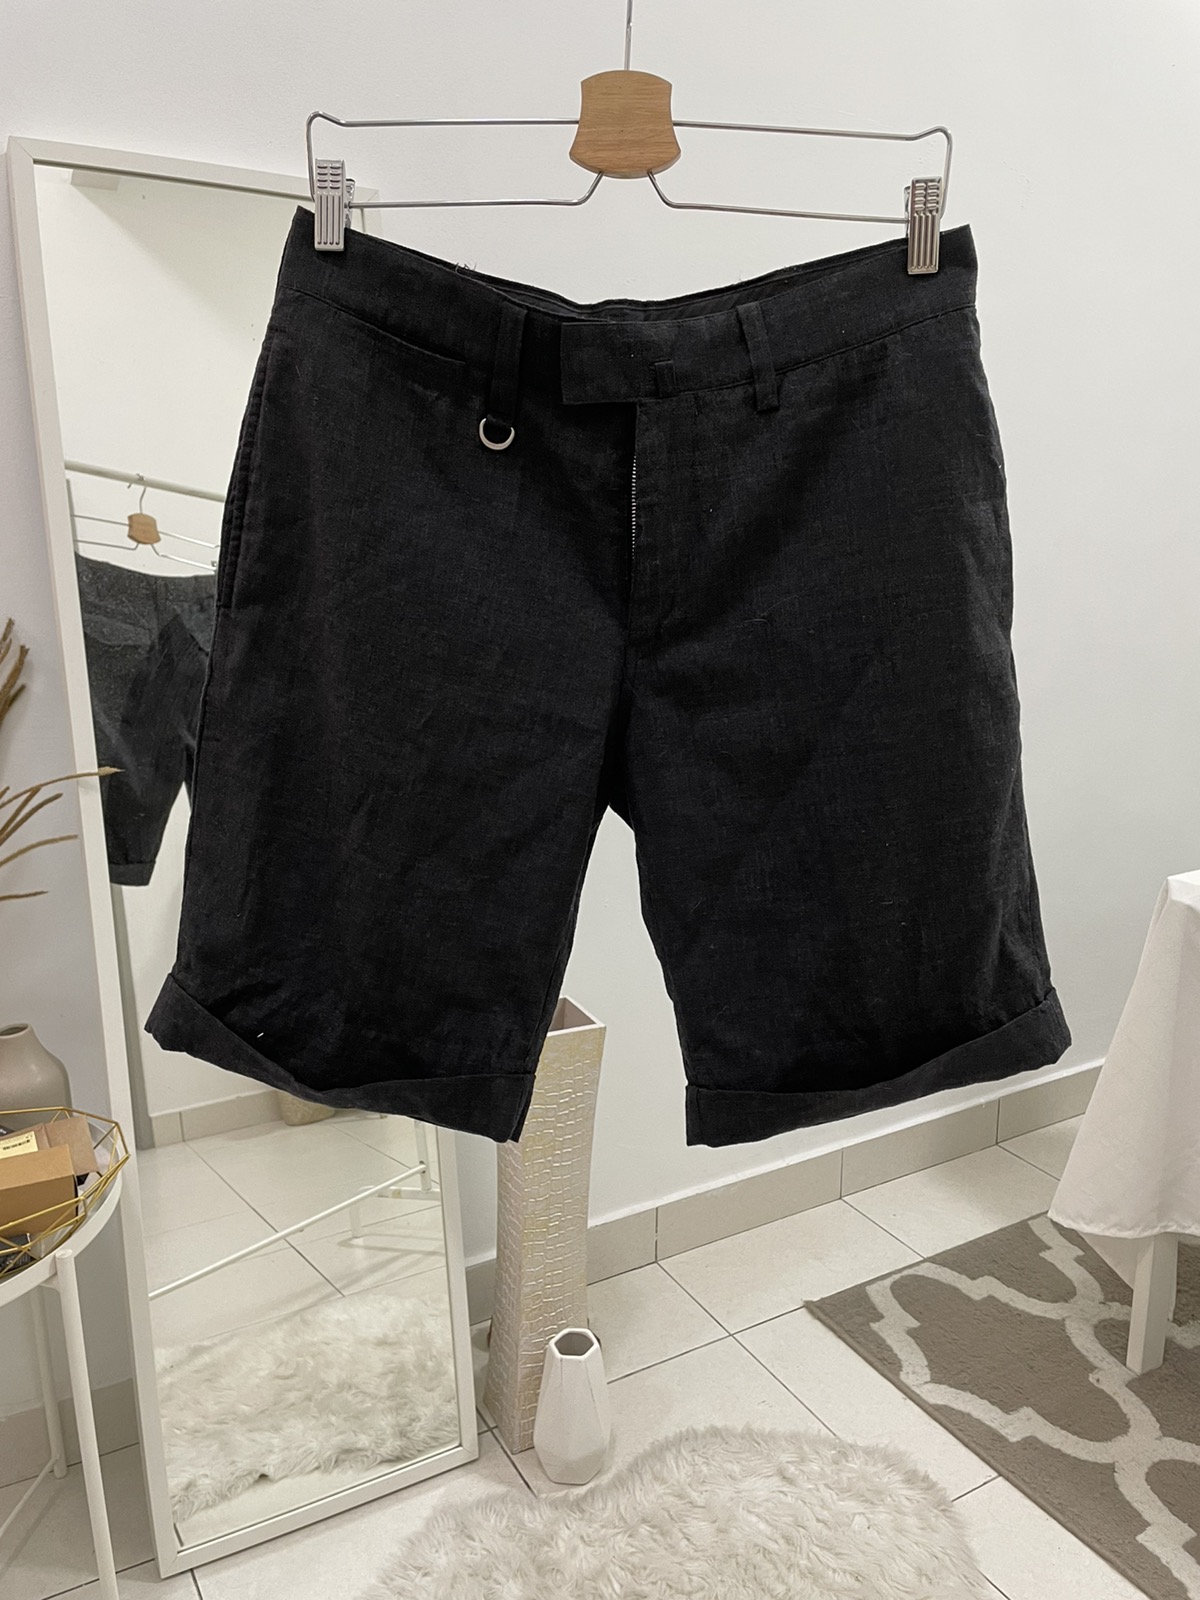 Japanese Brand Sophnet. Short Pants - 1